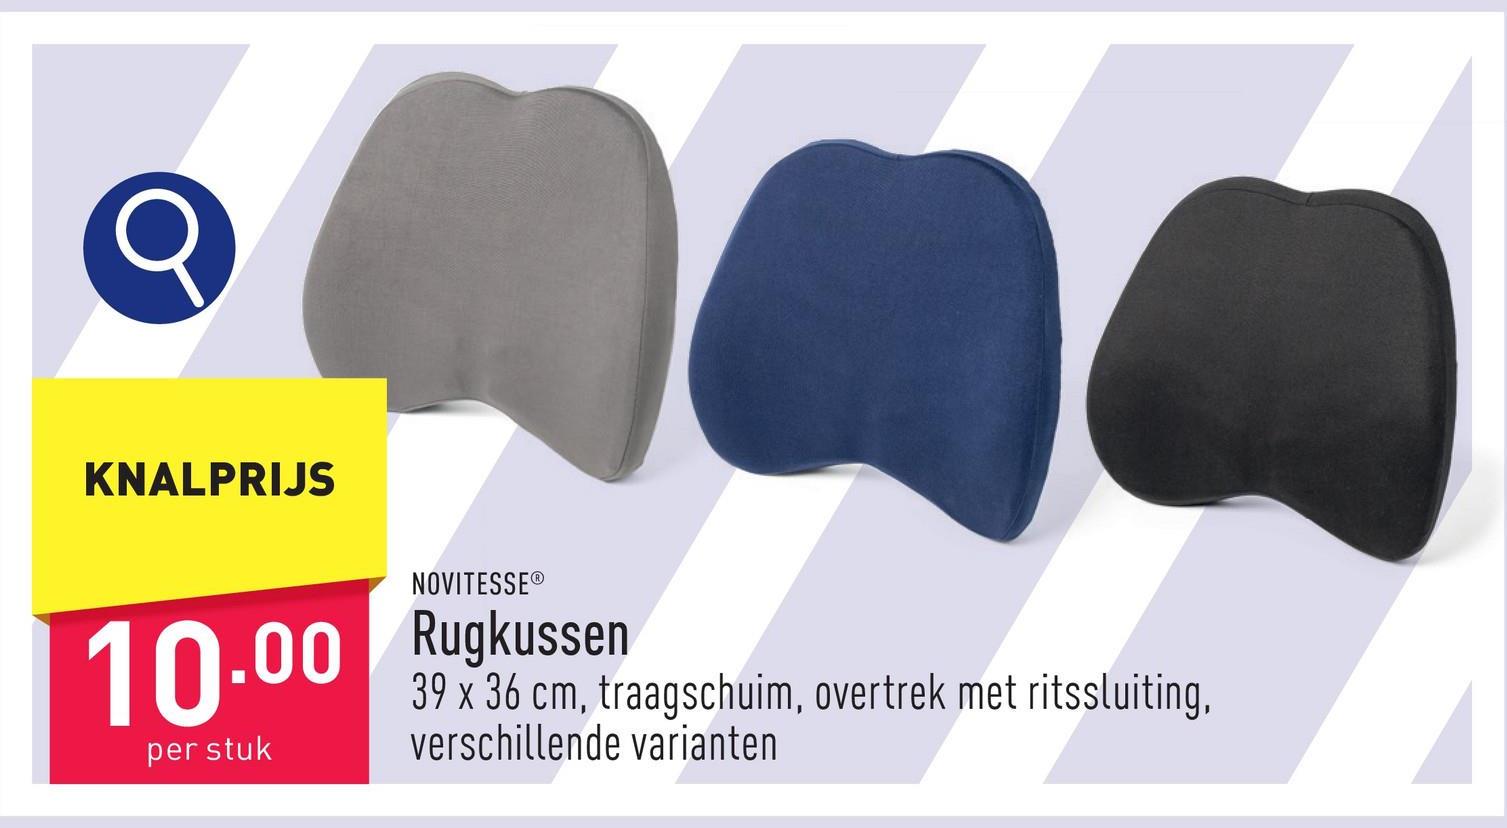 Rugkussen polyester/elastaan*, binnenkussen: polyurethaan, traagschuim, 39 x 36 cm, overtrek met ritssluiting, keuze uit verschillende varianten, OEKO-TEX®-gecertificeerd